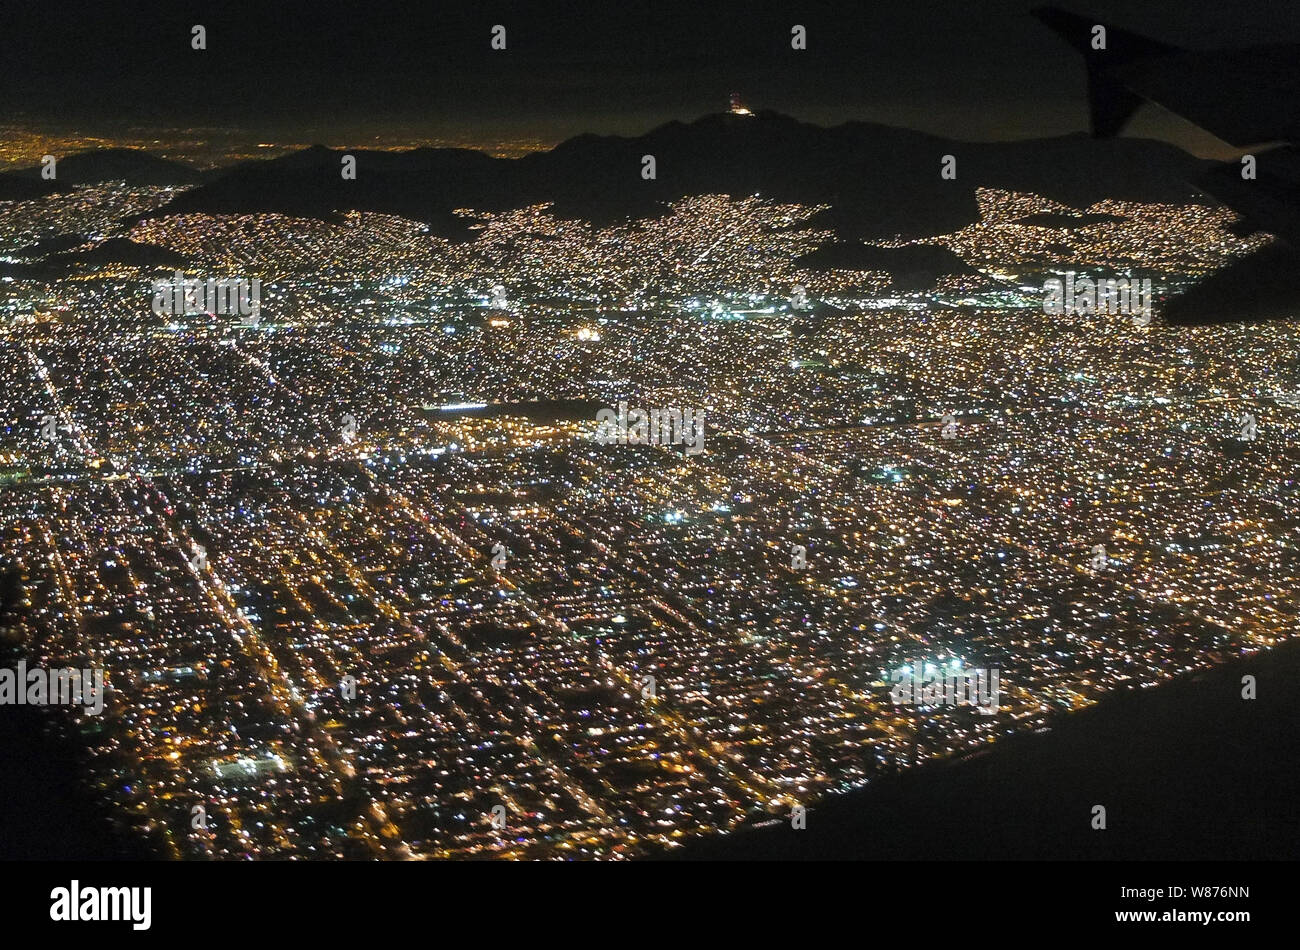 Città del Messico (ufficialmente conosciuta come México, D. F., o  semplicemente D.F.) è il Distretto Federale (Distrito federale), capitale del  Messico e sede di poteri federali dell'Unione messicana. Si tratta di una